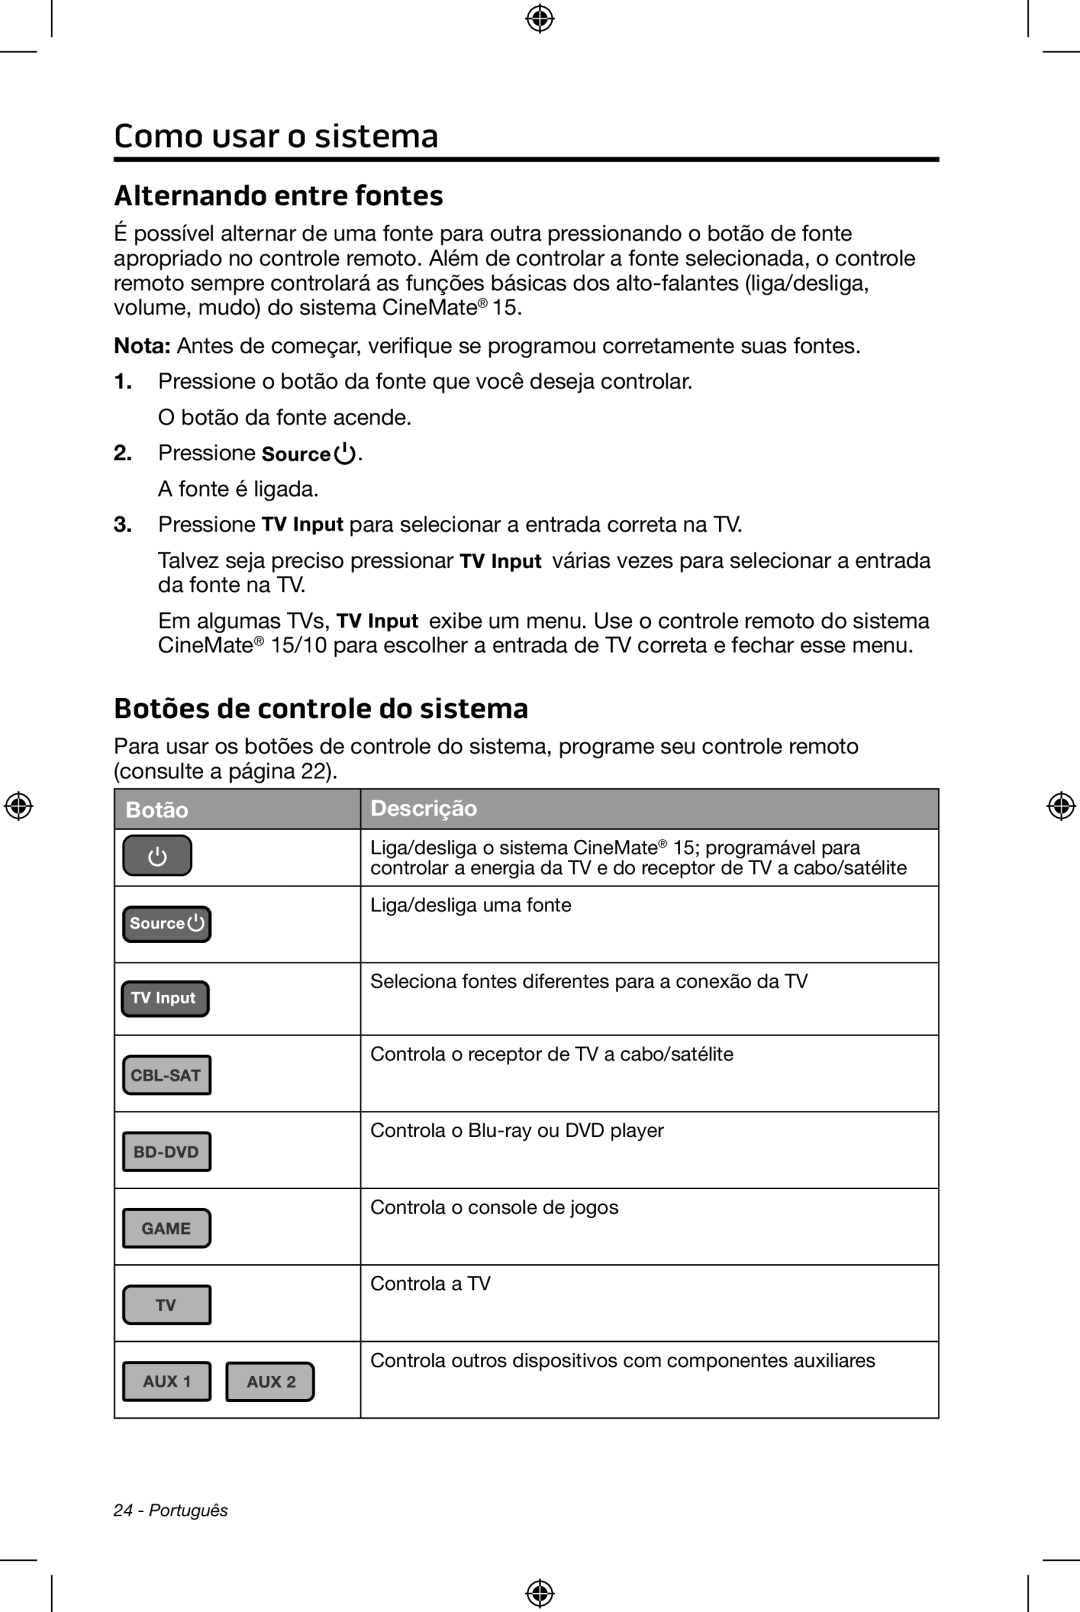 Bose CineMate 15/10 manual Como usar o sistema, Alternando entre fontes, Botões de controle do sistema, Botão, Descrição 